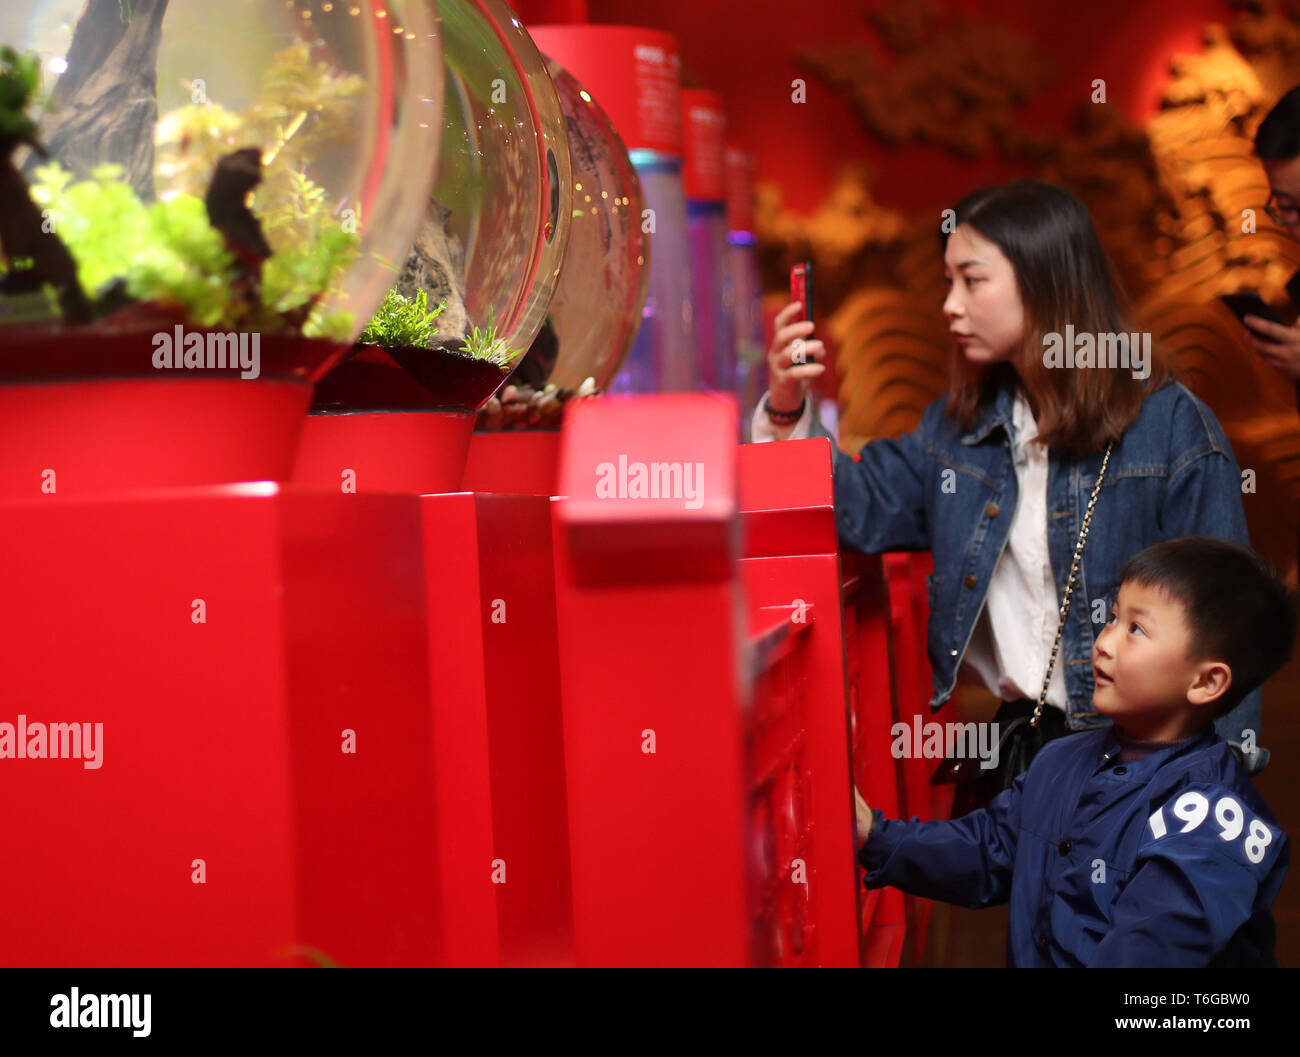 (190501) -- SHANGHAI, le 1 mai, 2019 (Xinhua) -- Les touristes visiter l'aquarium Ocean Shanghai dans l'est de la Chine, Shanghai, le 1 mai 2019. Le tourisme stimule autant de gens sortent pour des activités de loisirs durant les quatre jours de la Fête du travail fête nationale. (Xinhua/Liu Ying) Banque D'Images